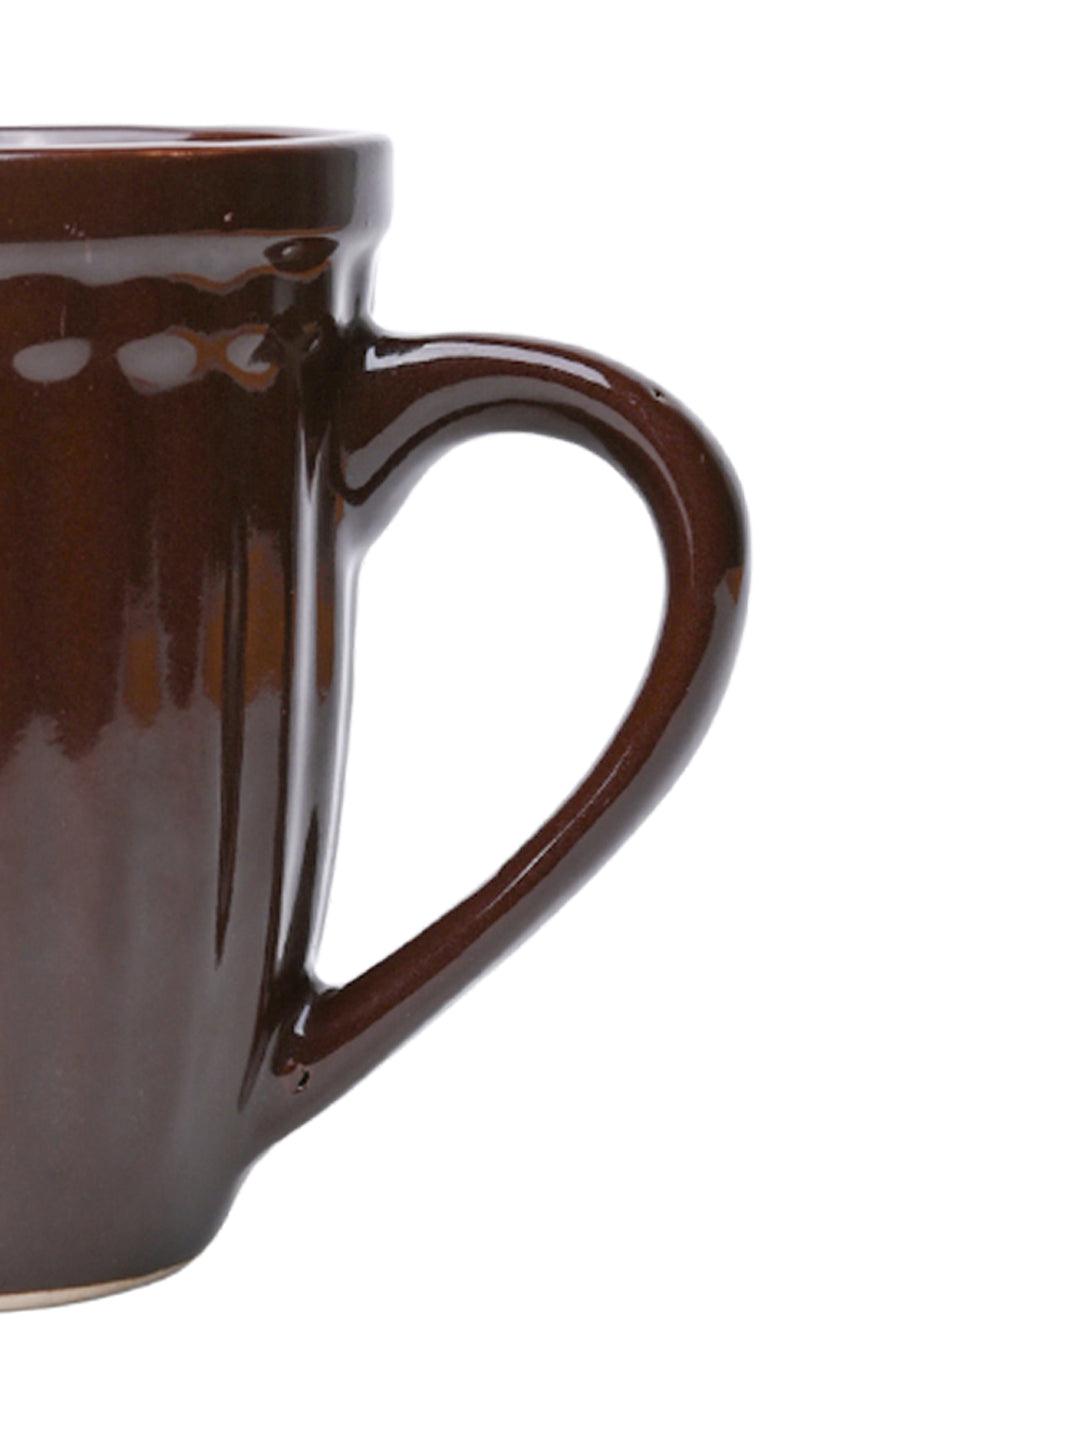 VON CASA Ceramic Coffee & Tea Mug - 300 Ml, Dark Brown - MARKET 99